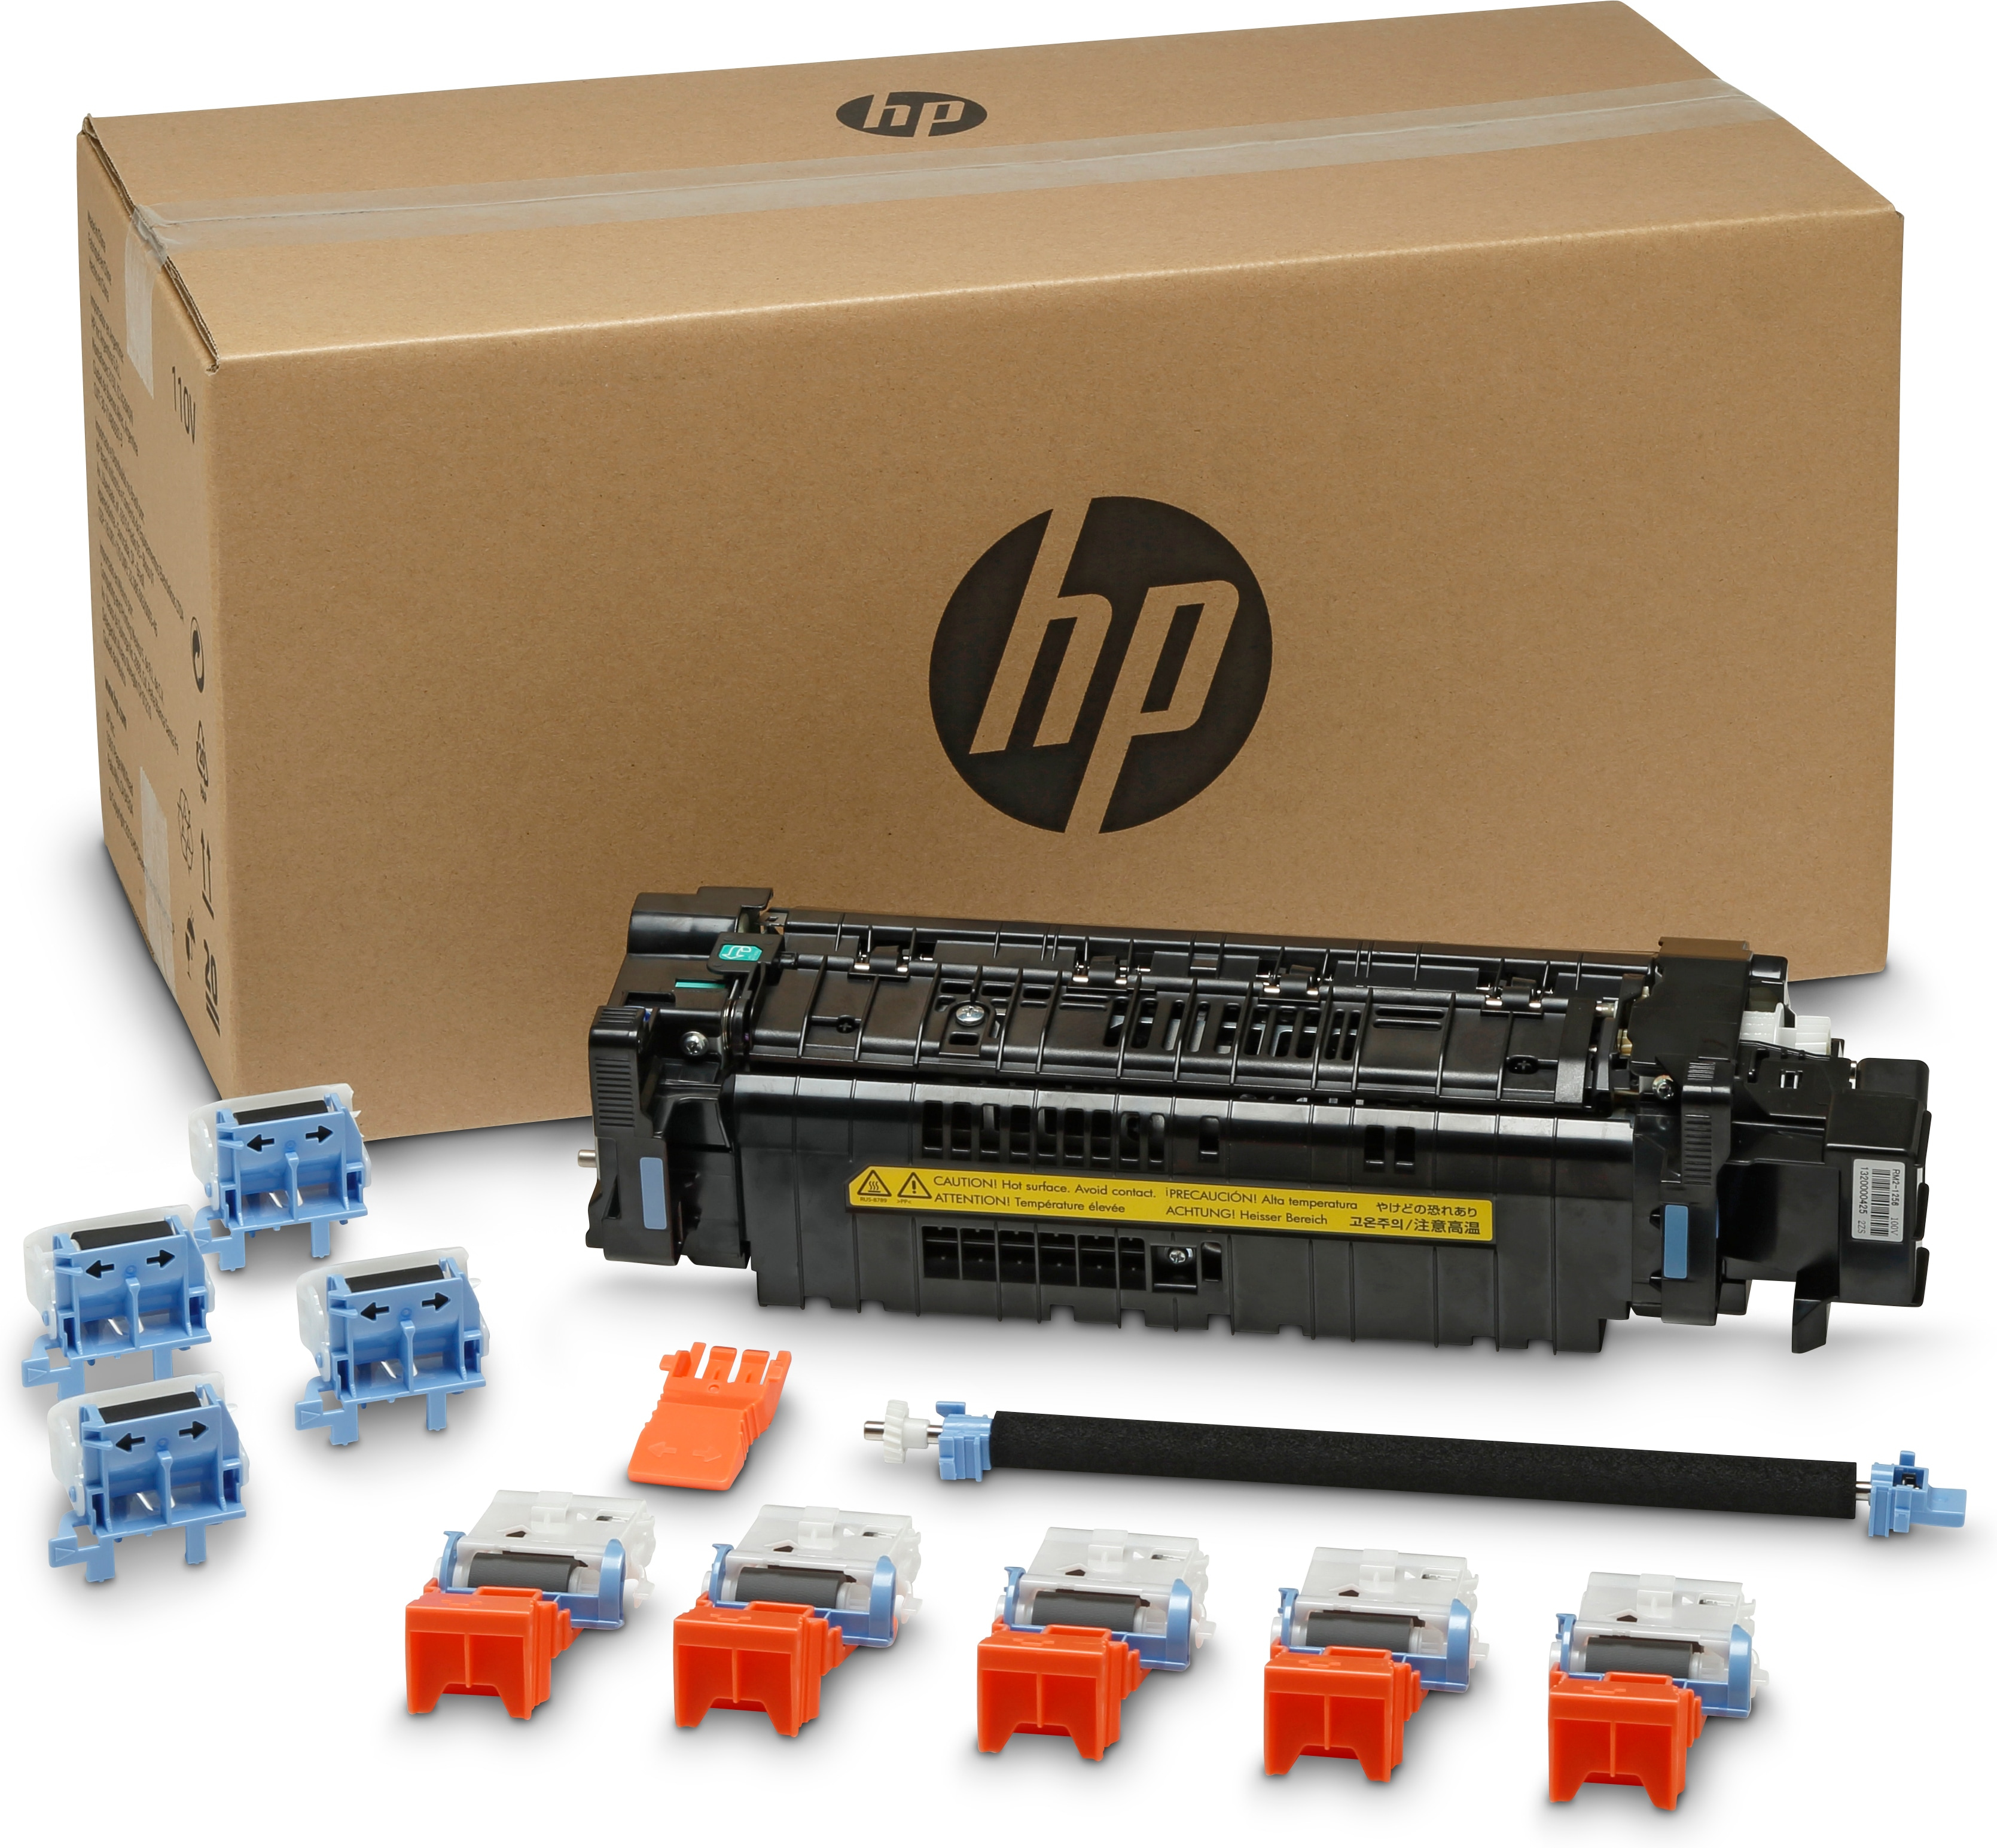 HP J8J87A printer kit